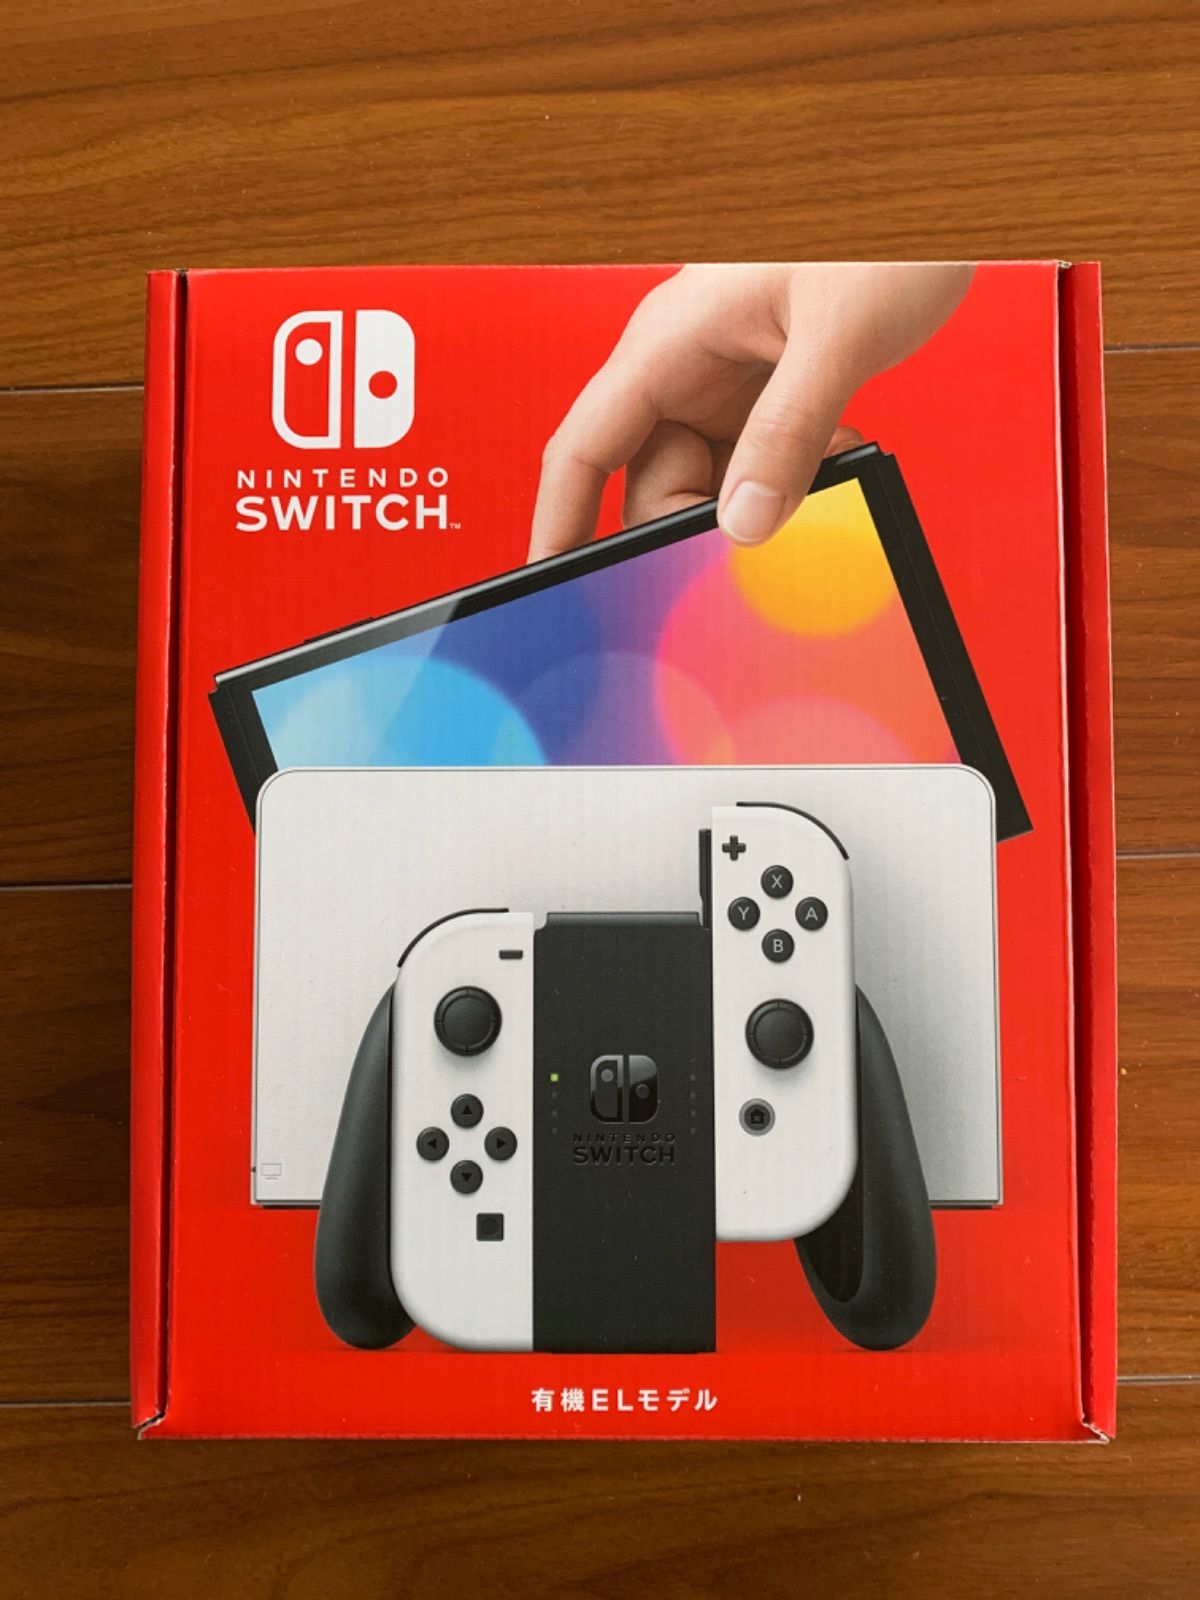 Nintendo Switch(有機ELモデル) 即日発送 30%ポイント還元 - メルカリ